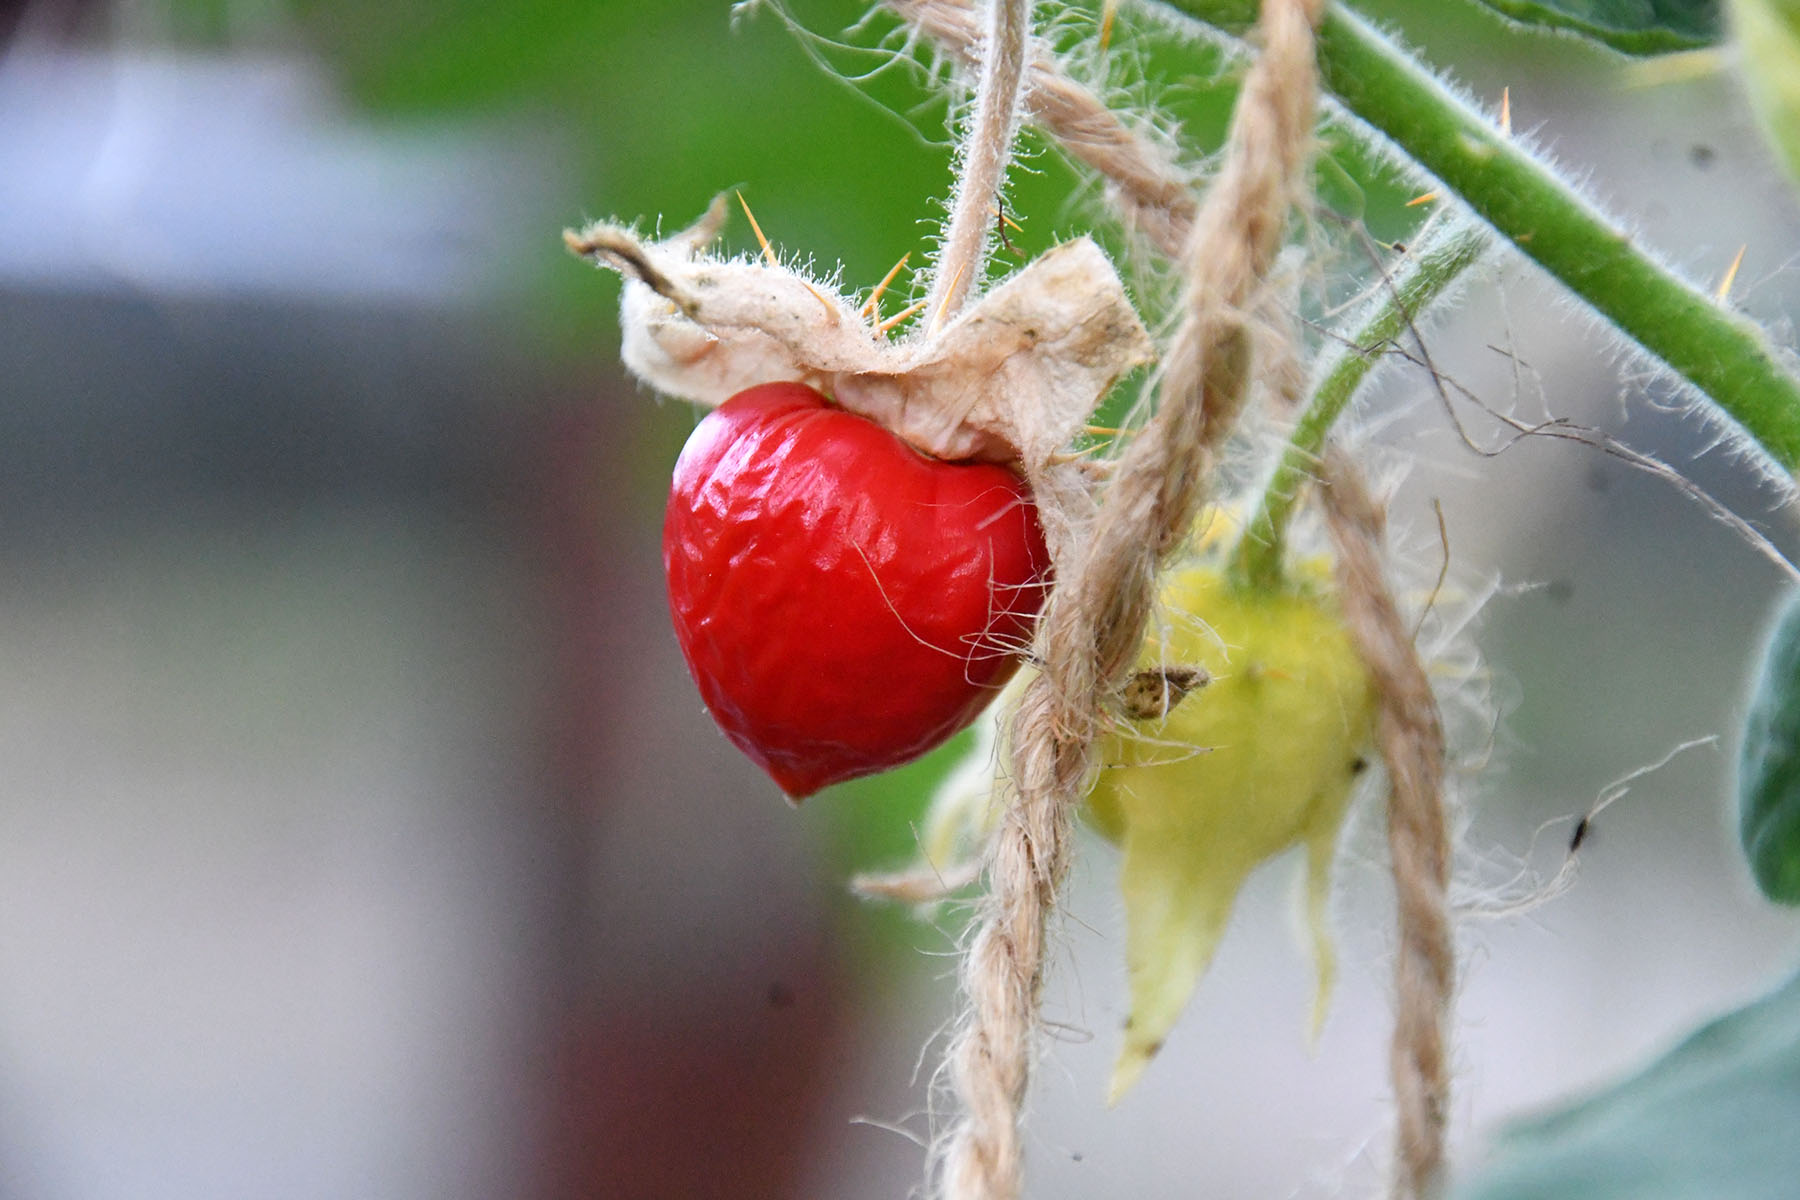 Vilja kandev unilook-maavits meenutab väliselt mõneti füüsalit, maitselt pigem tomatit. Foto Urmas Saard